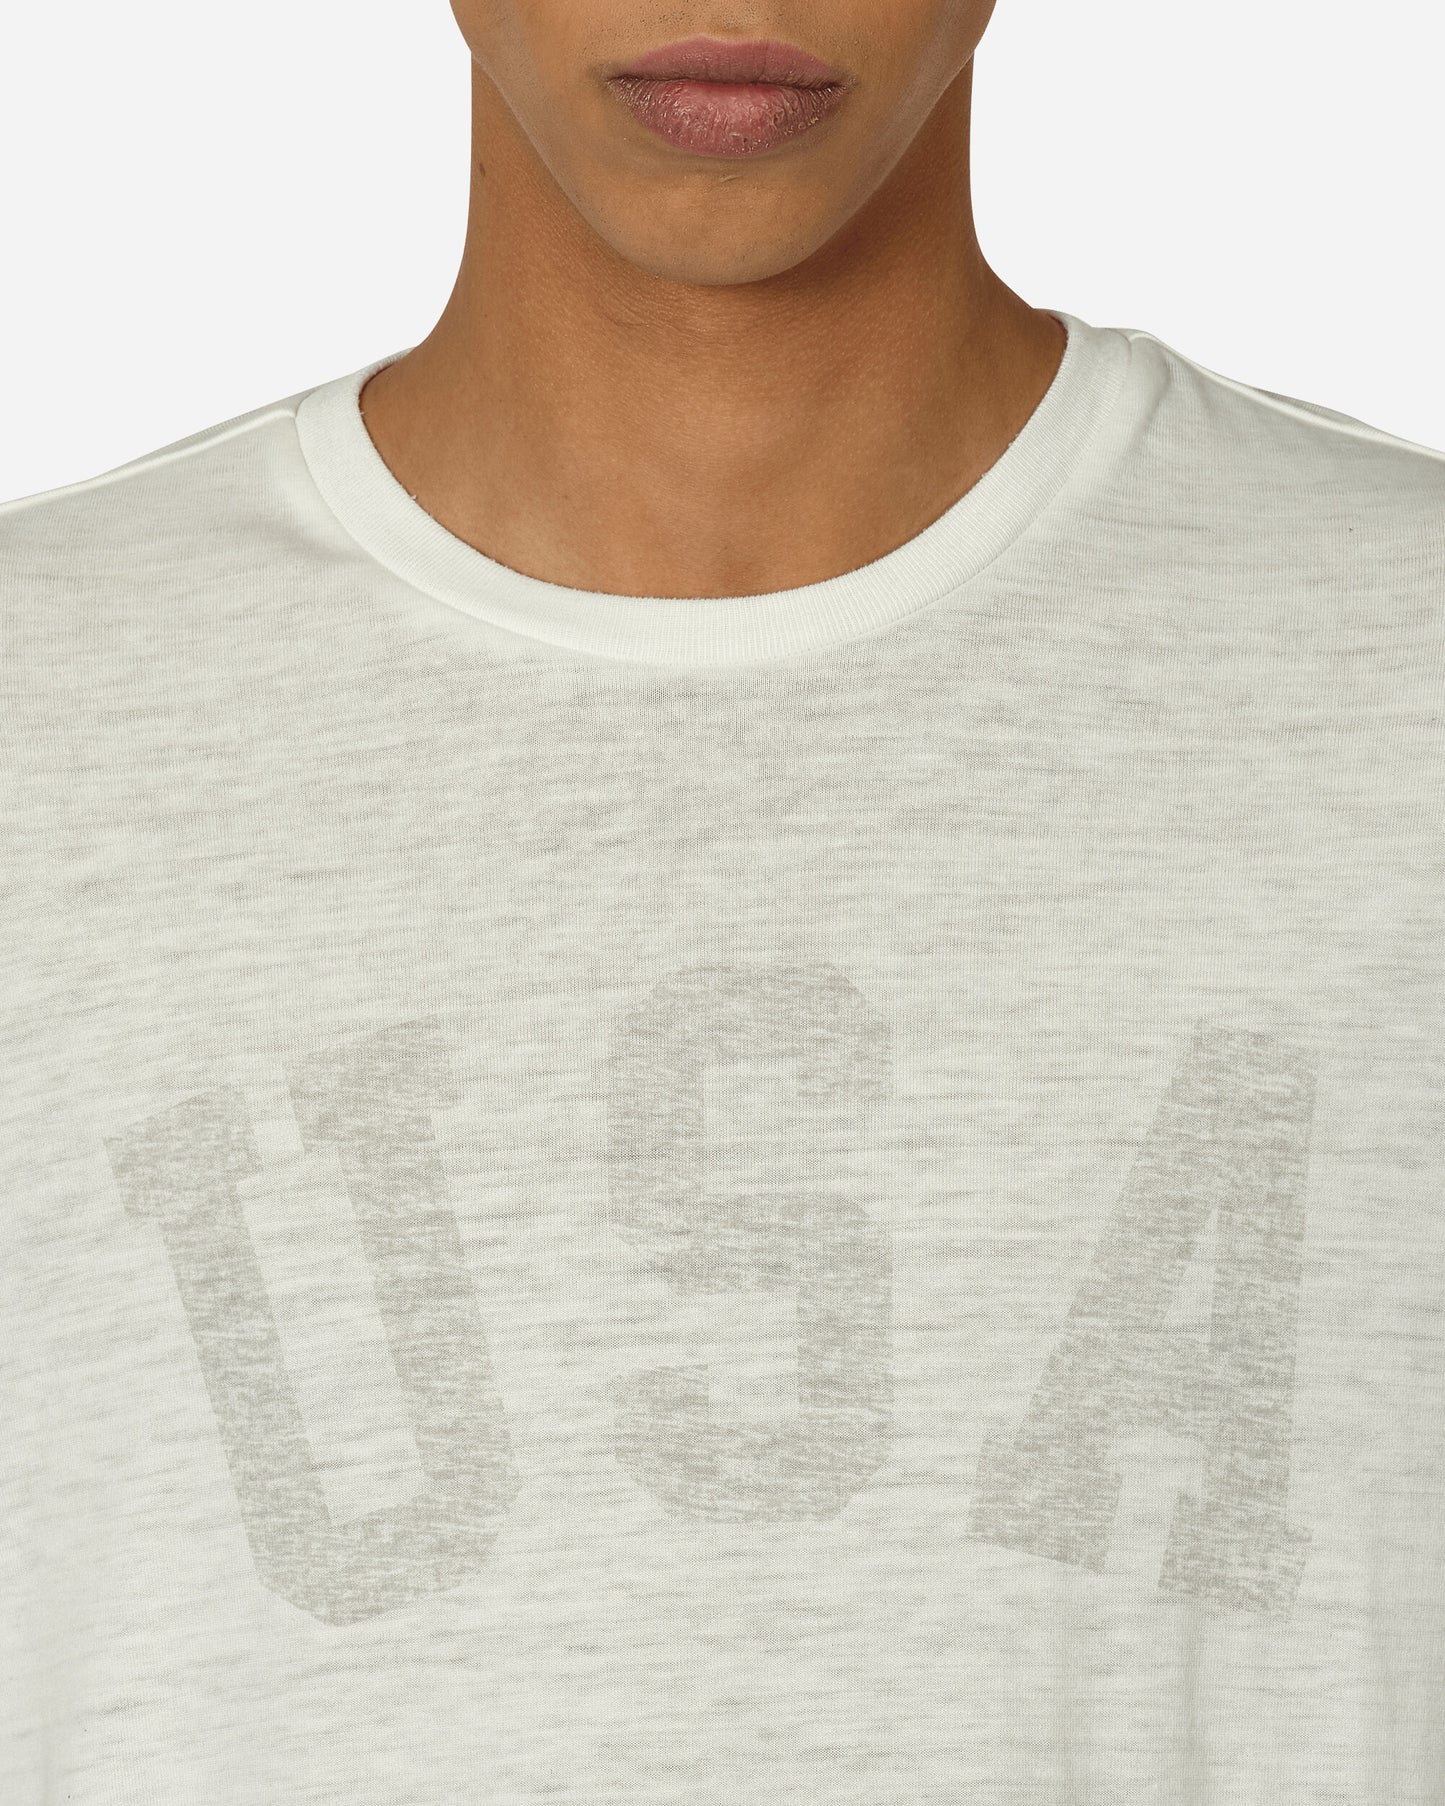 Guess USA Gusa Burnout Tee Alabaster White Mult T-Shirts Shortsleeve M4GI01KC4J0 F0I6